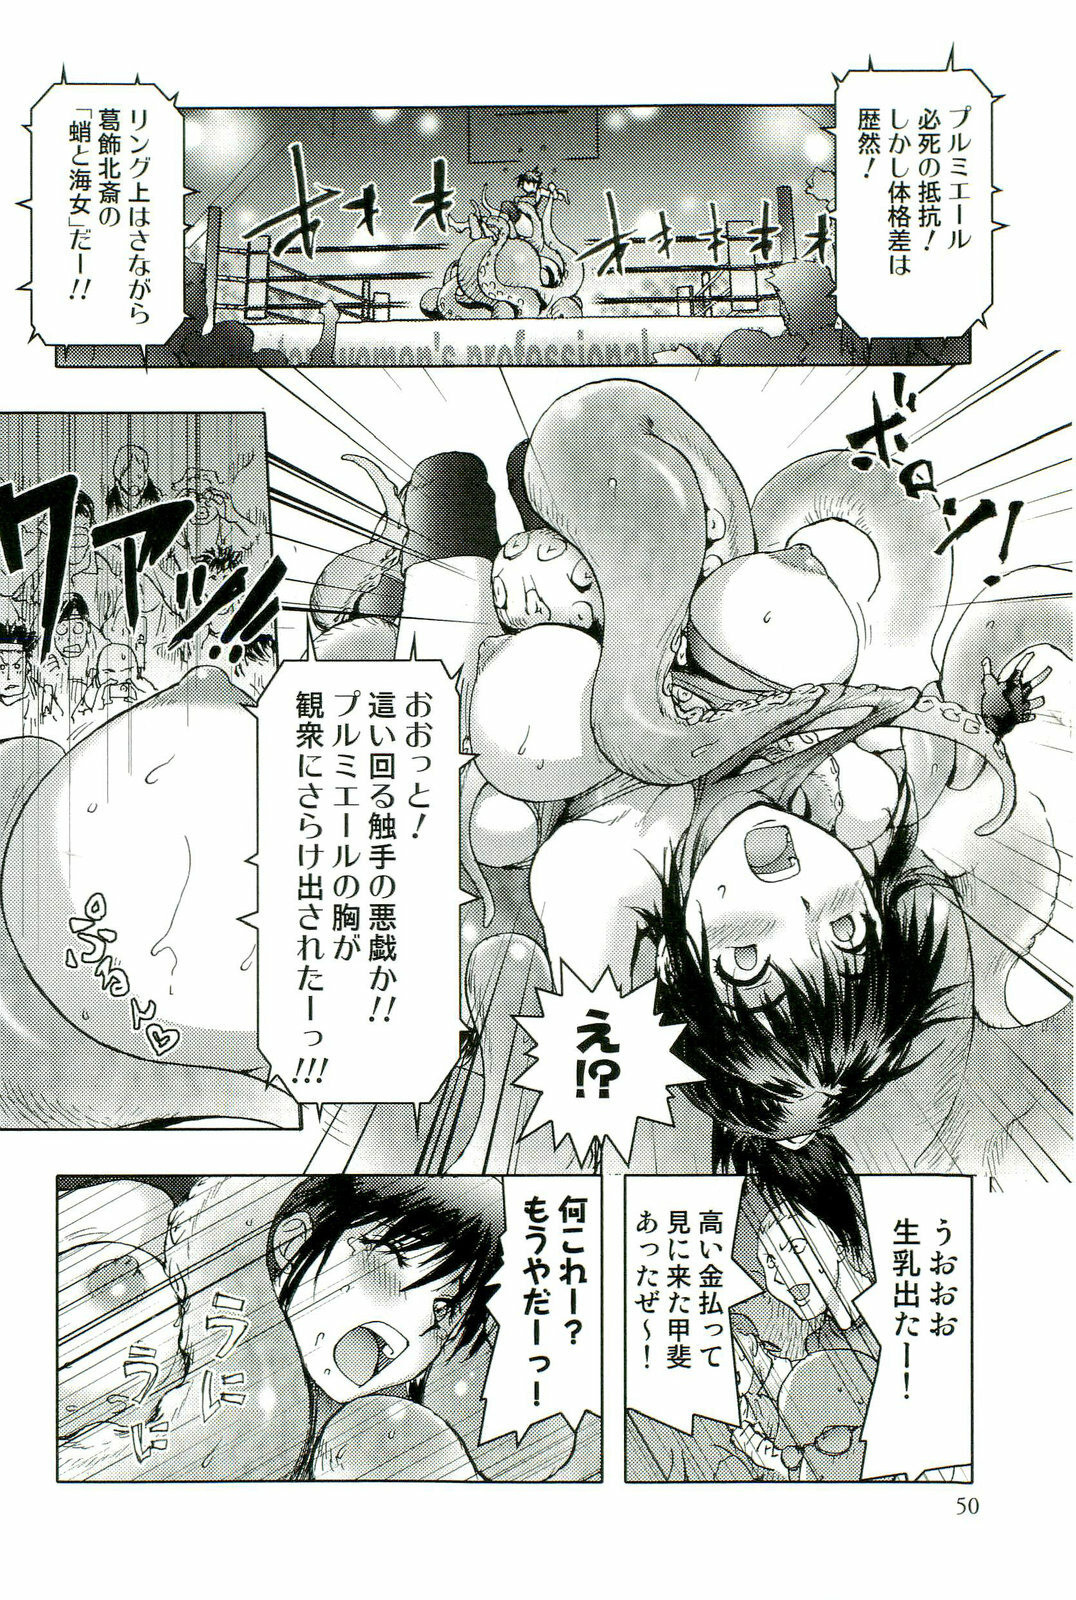 [Anthology] Shokushu! Etsuraku no Utage 2 page 51 full